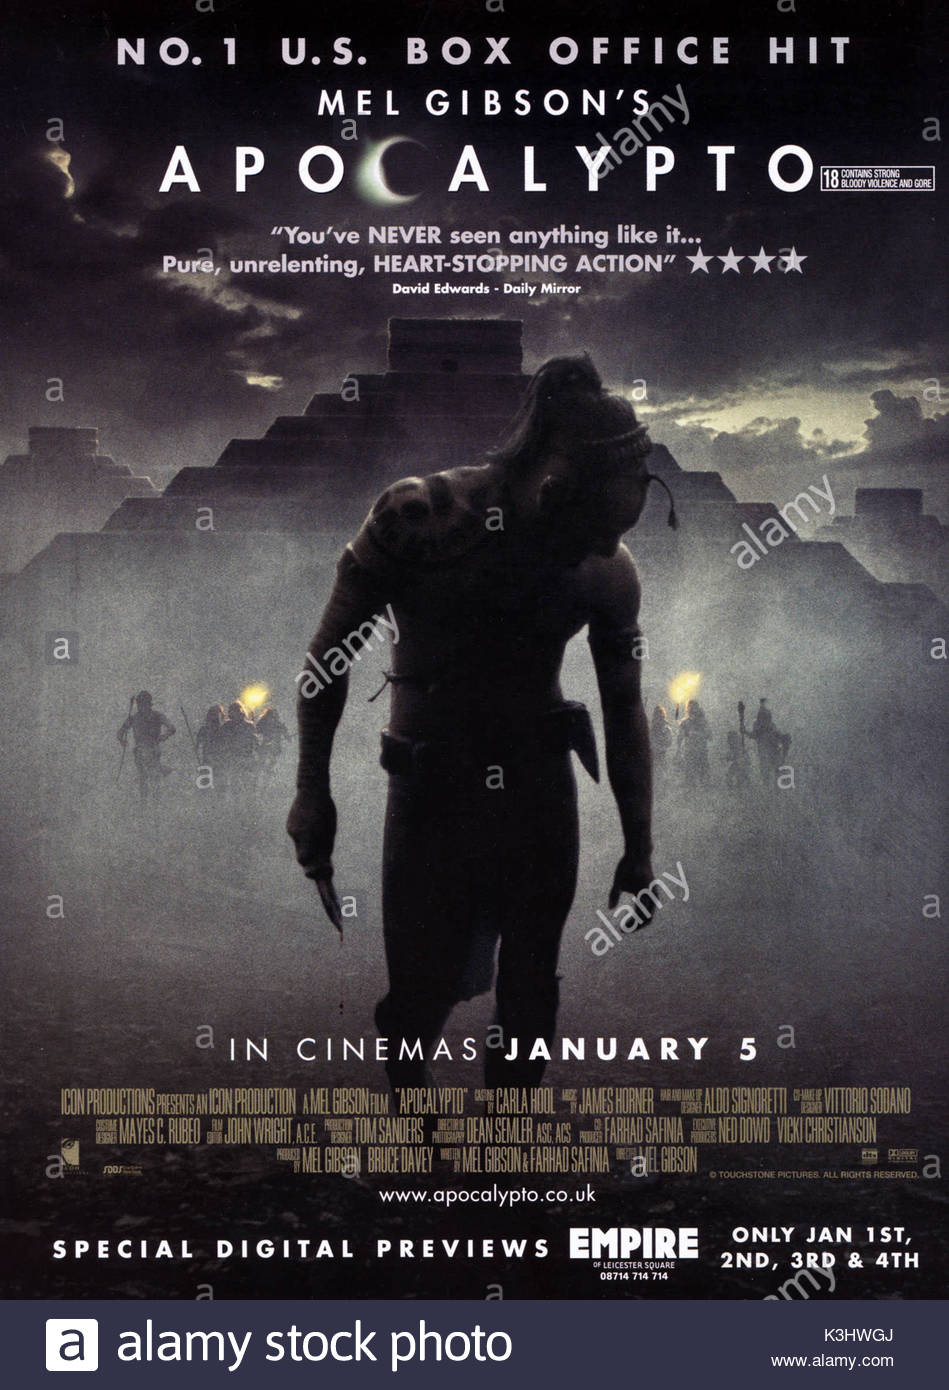 download film apocalypto